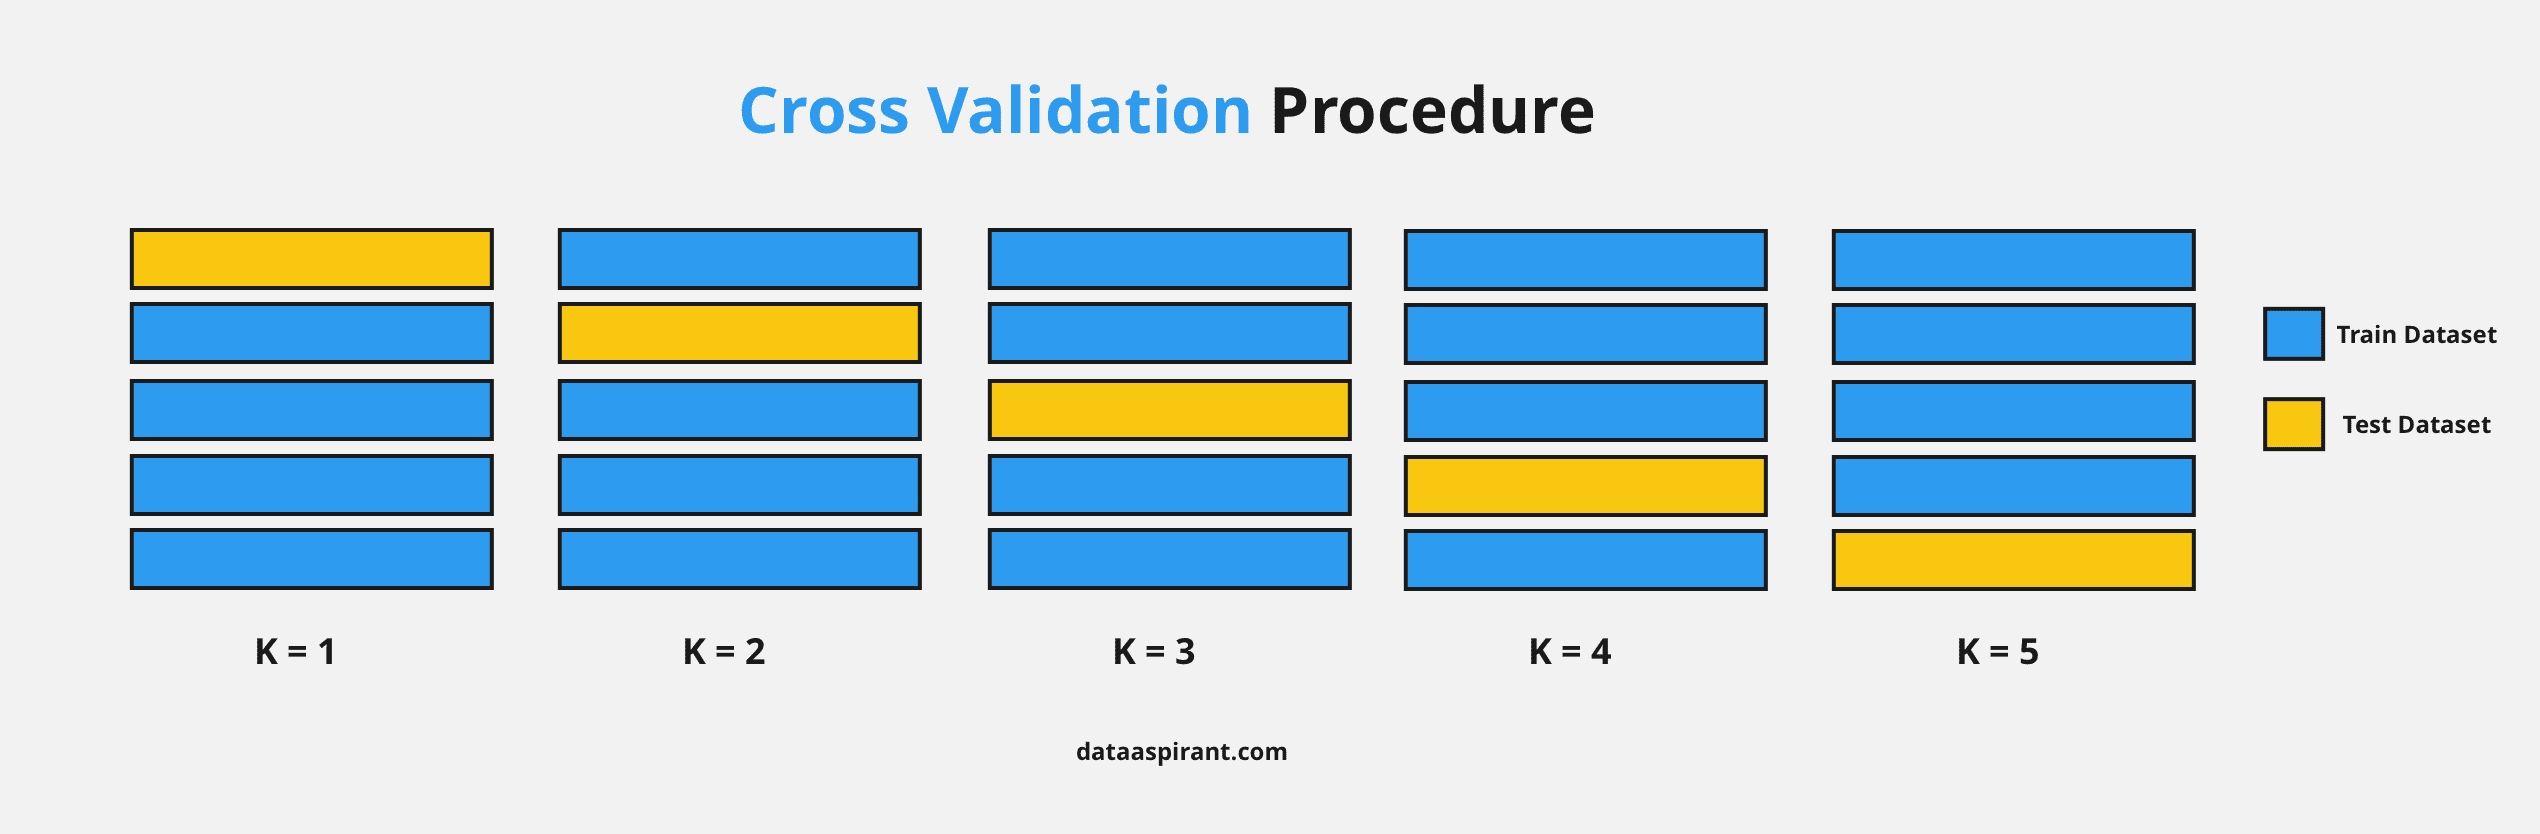 Cross Validation Procedure